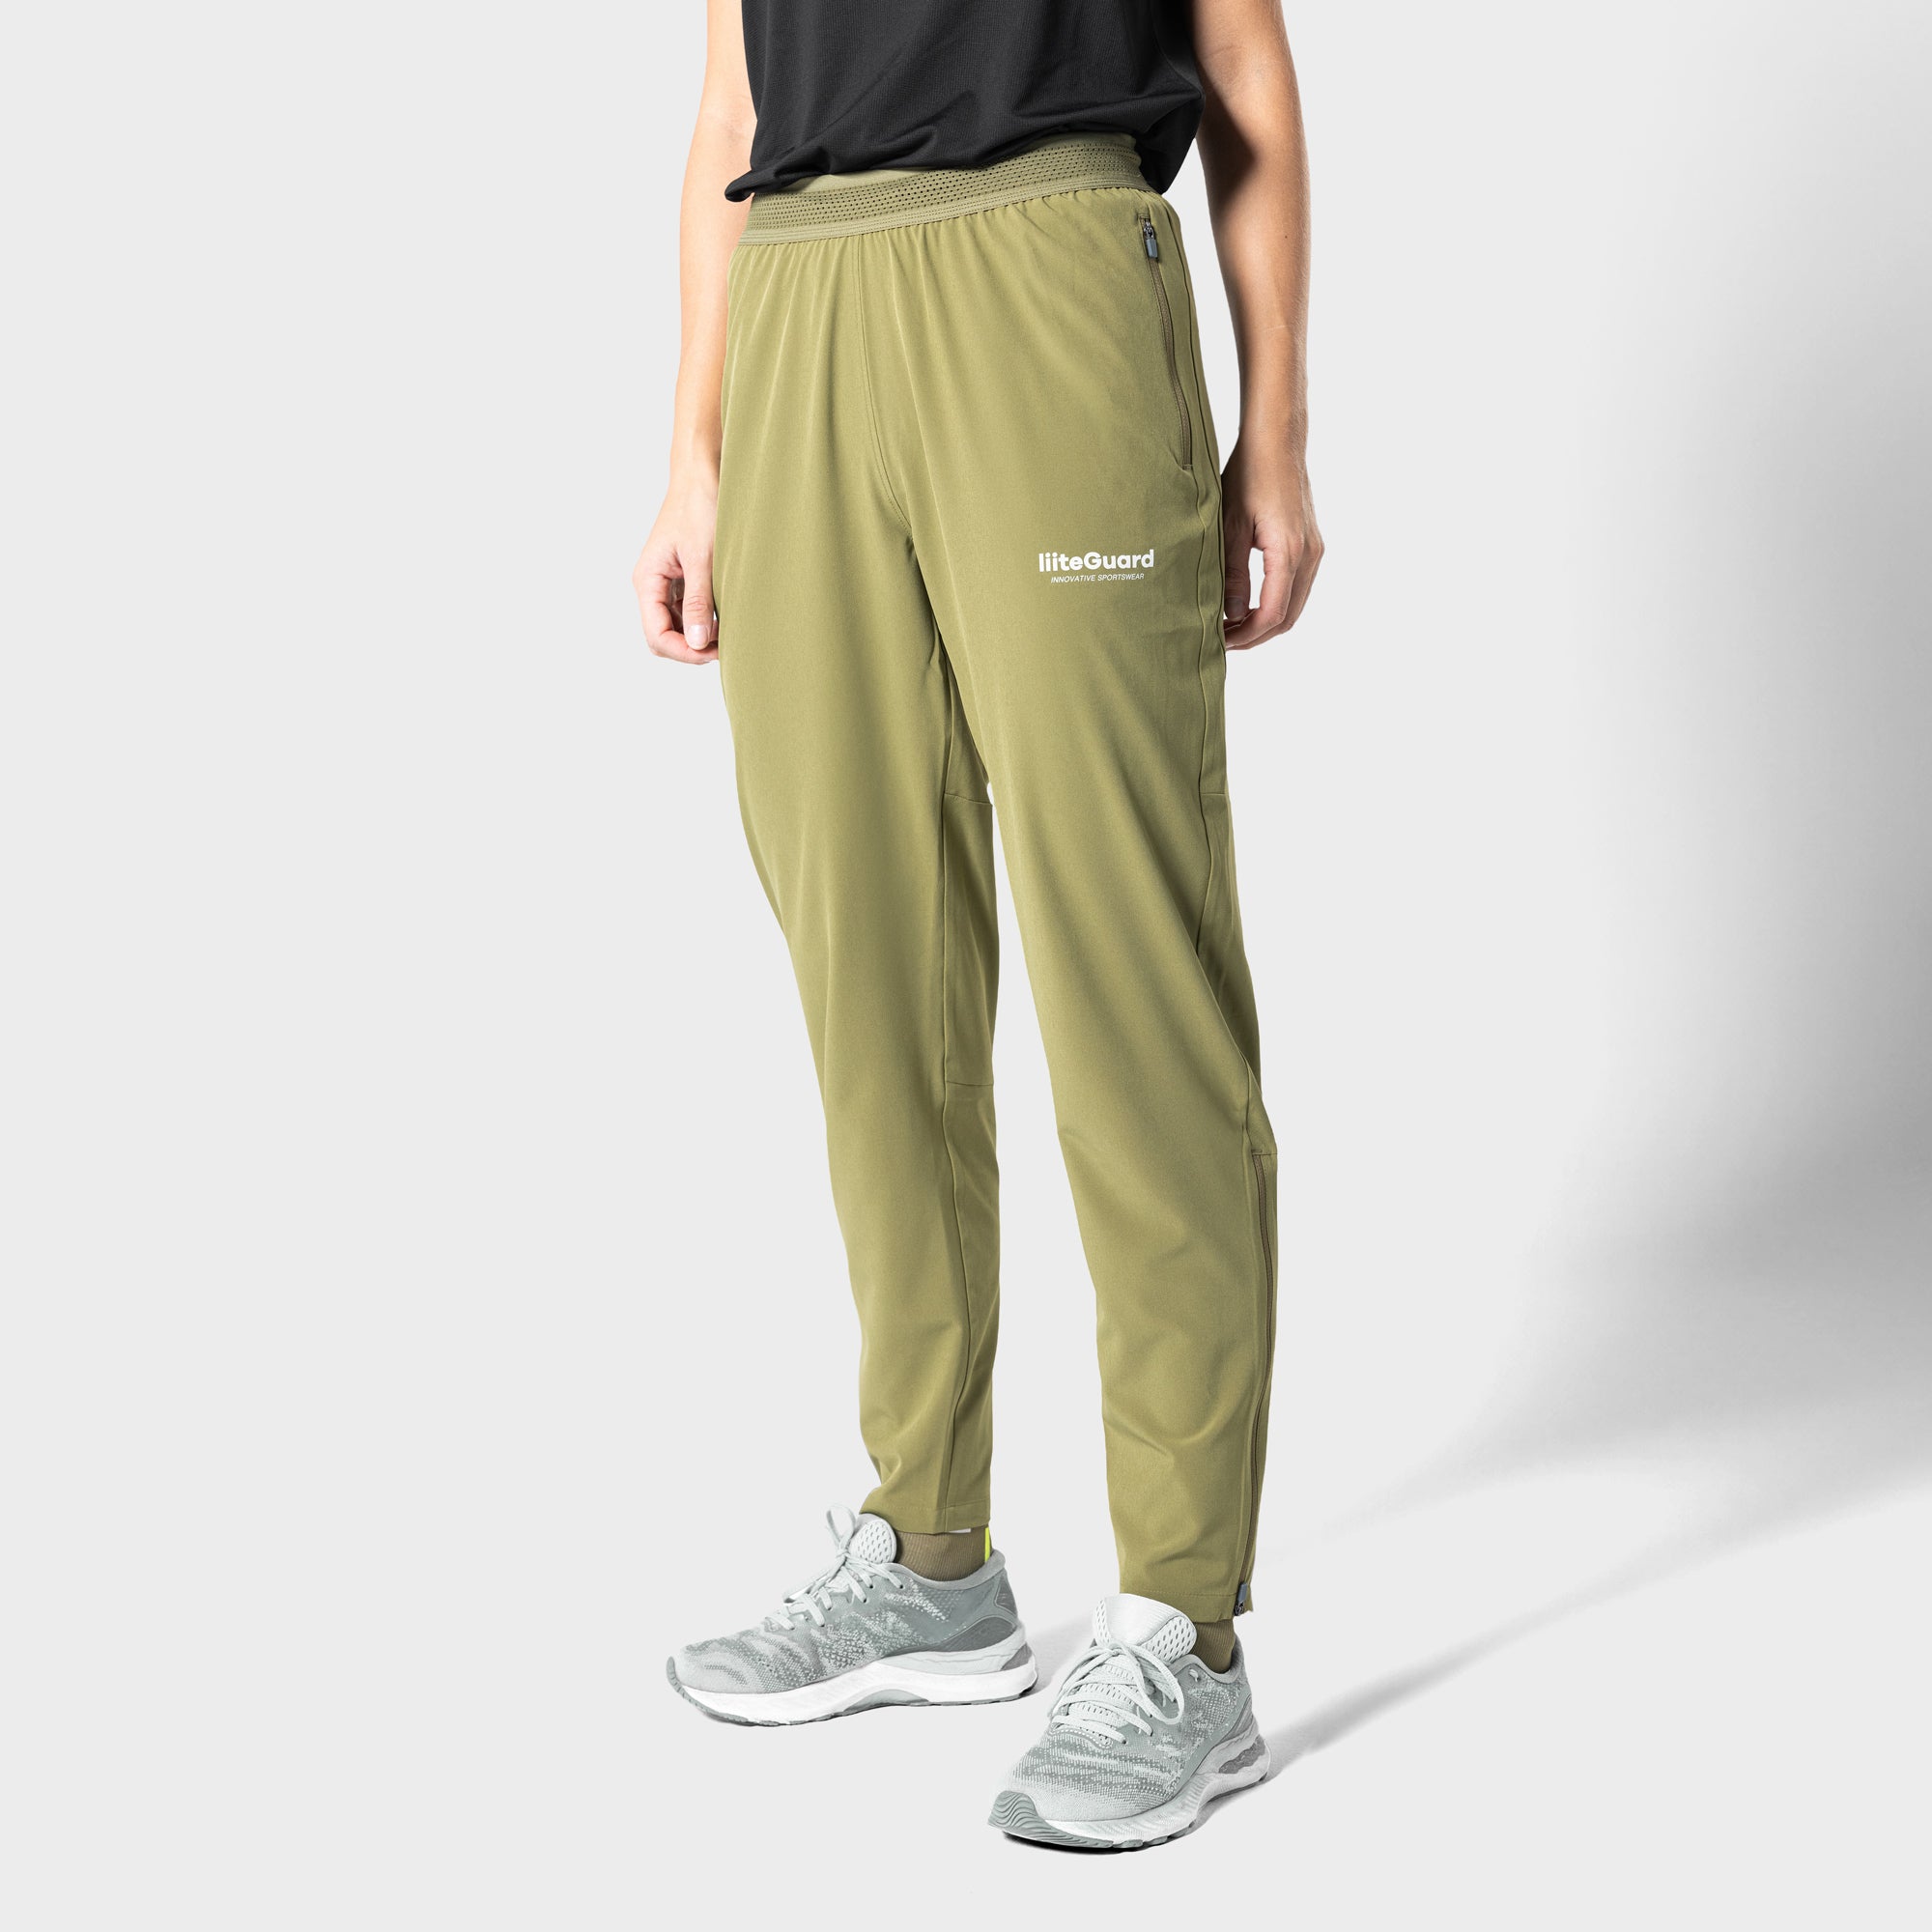 Liiteguard RE-LIITE LONG PANTS (WOMEN) Trousers Dusty Green